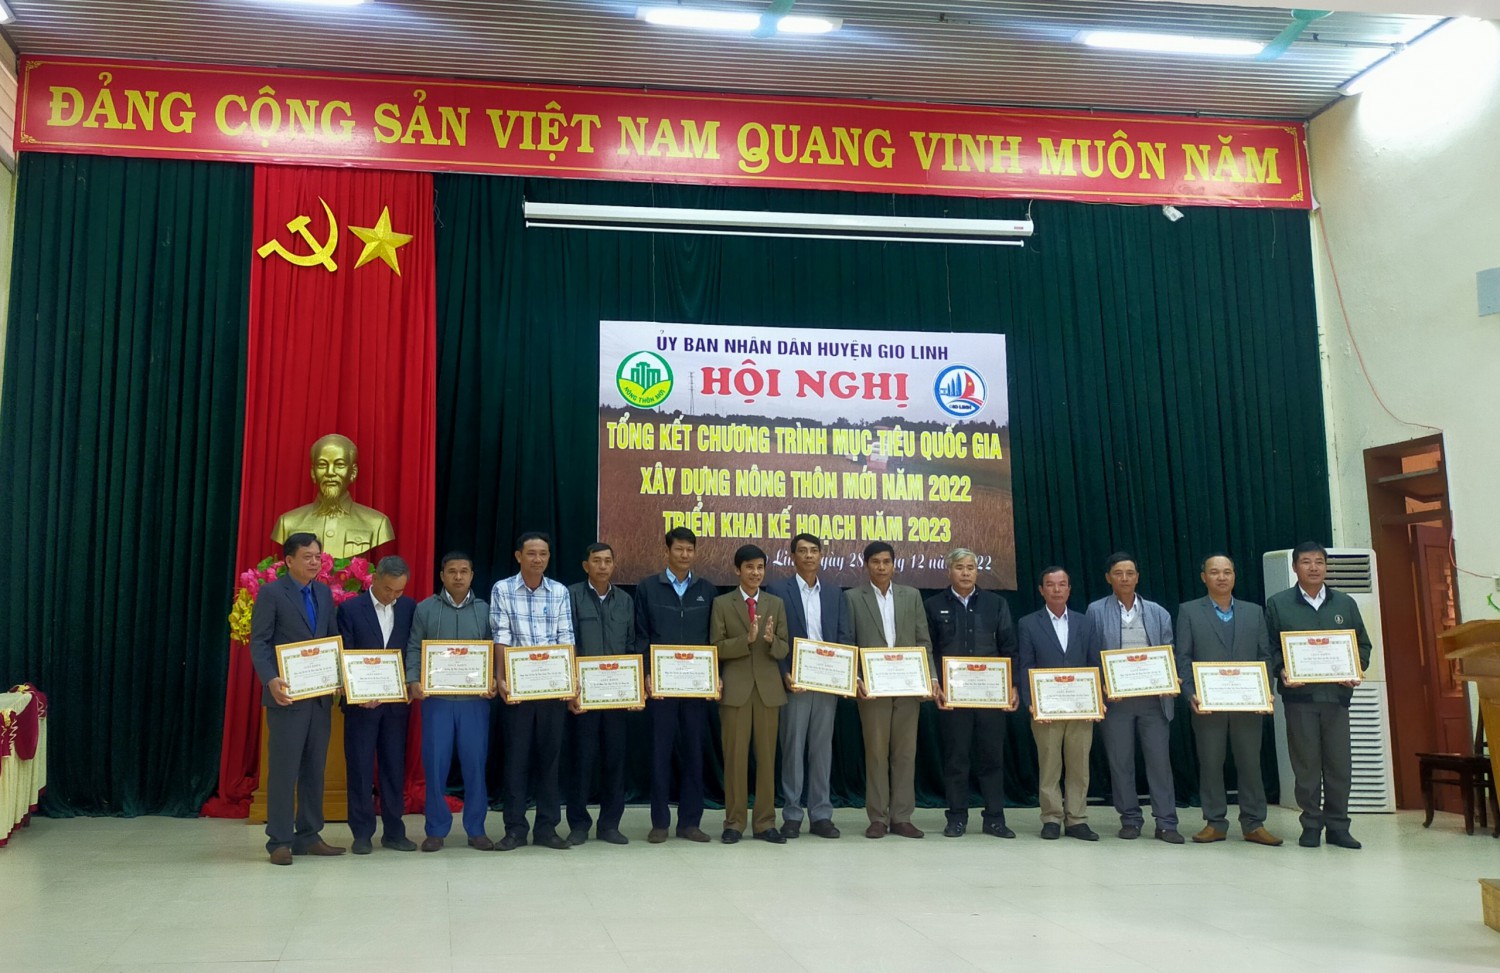 UBND huyện Gio Linh khen thưởng cho các tập thể có nhiều thành tích trong xây dựng nông thôn mới huyện năm 2022